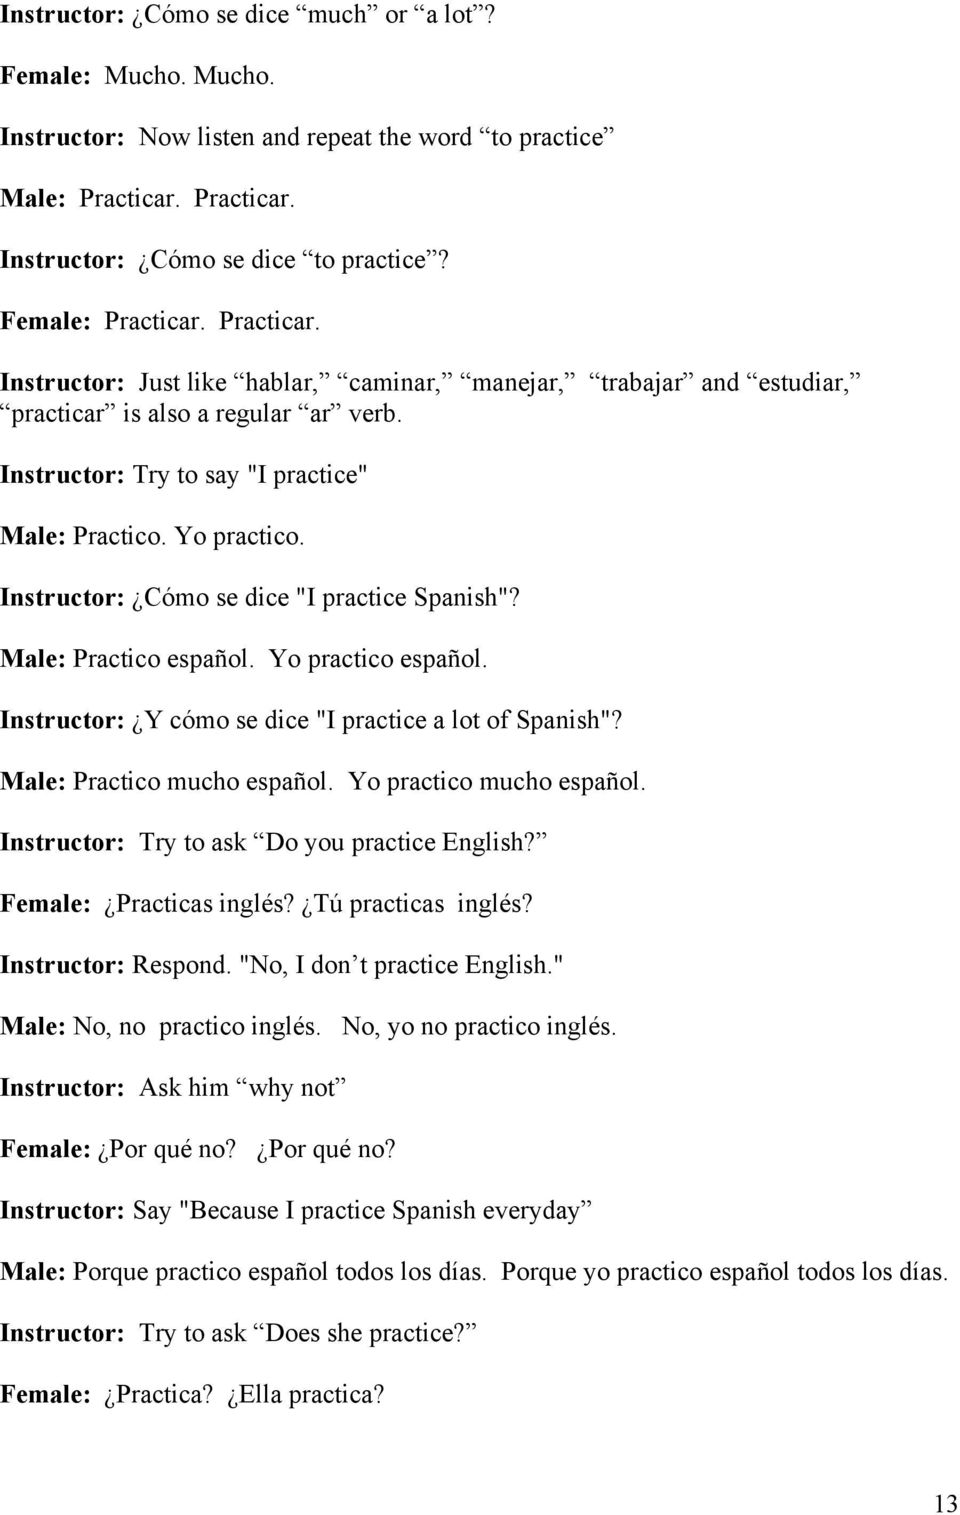 Yo practico. Instructor: Cómo se dice "I practice Spanish"? Male: Practico español. Yo practico español. Instructor: Y cómo se dice "I practice a lot of Spanish"? Male: Practico mucho español.